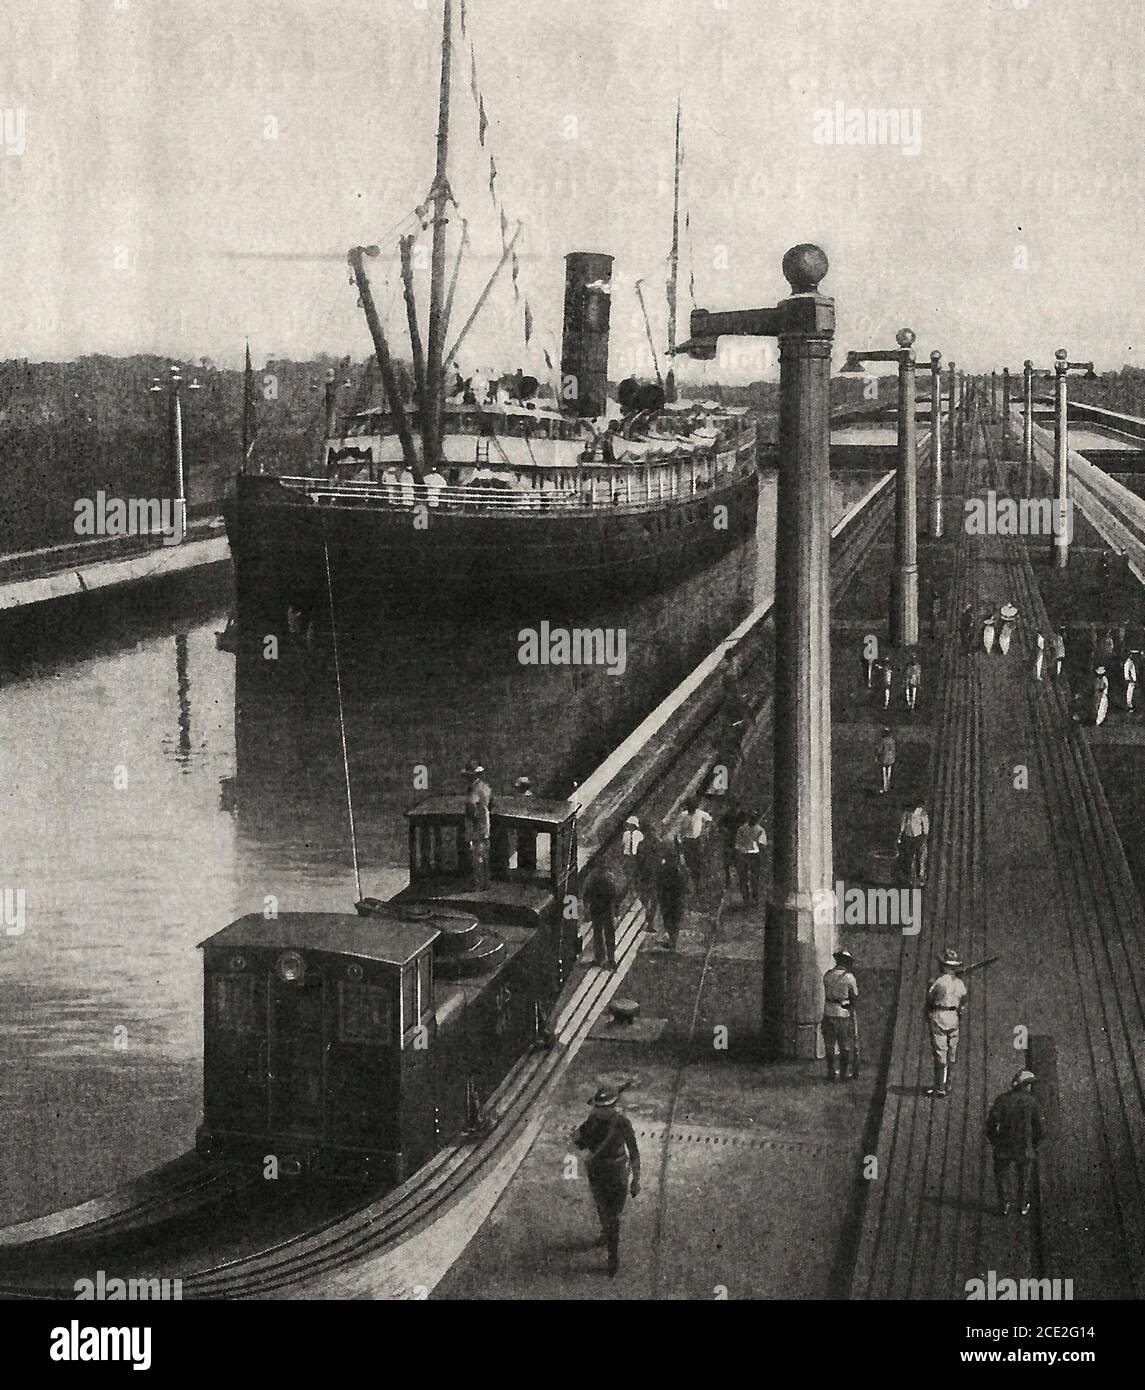 L'Alliance traversant les écluses de Gatun, canal de Panama, vers 1914 Banque D'Images